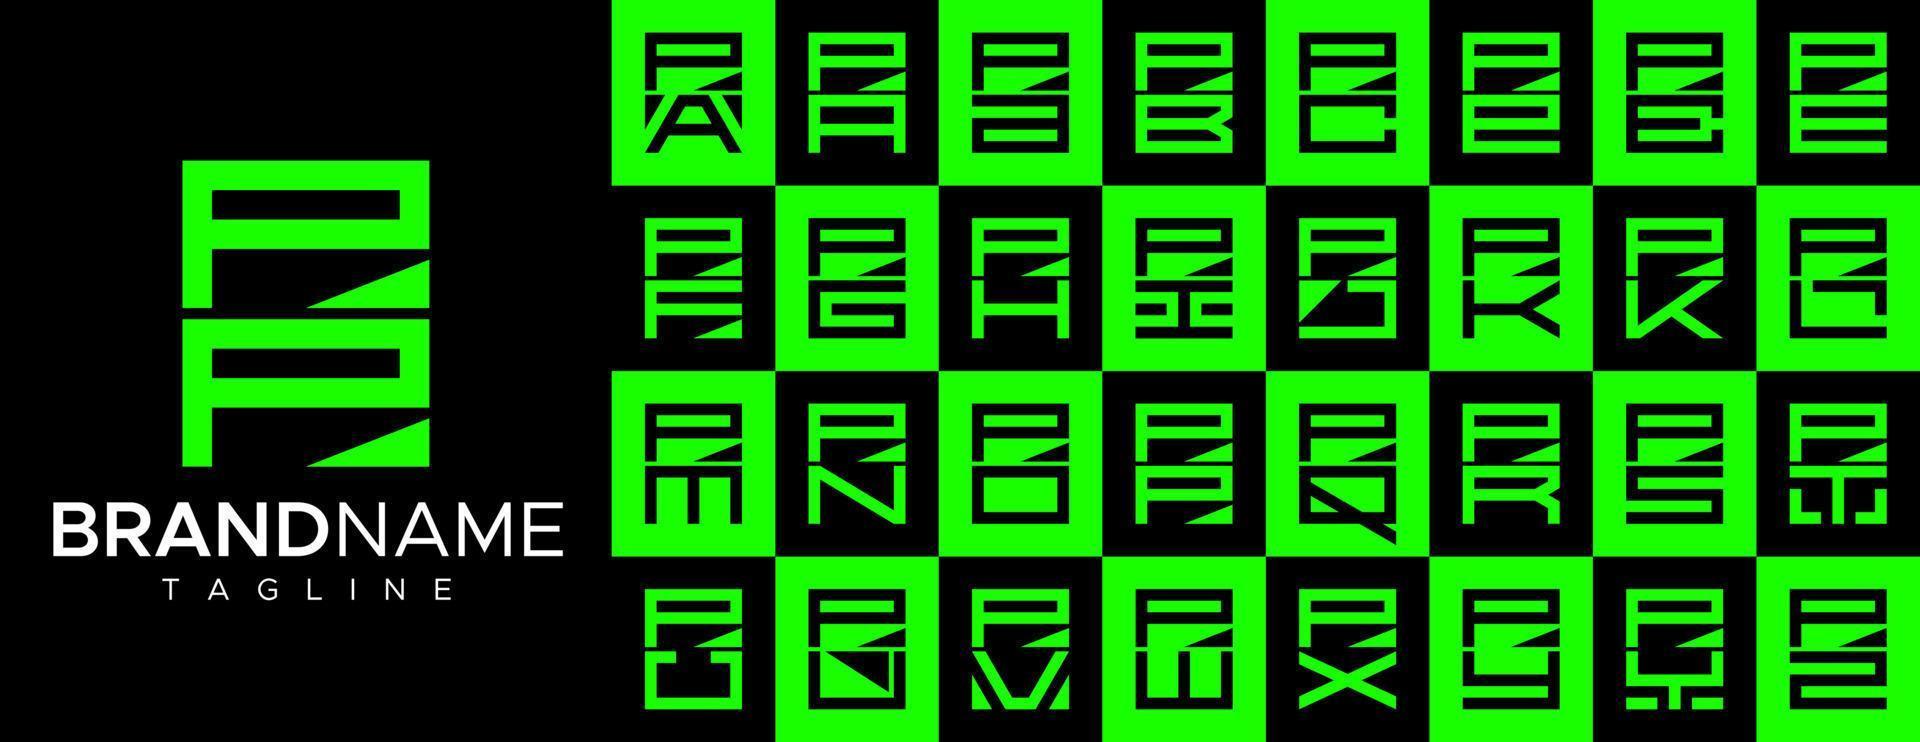 einfach Platz Brief p pp Logo Design Satz. modern Box Initiale p Logo Branding. vektor